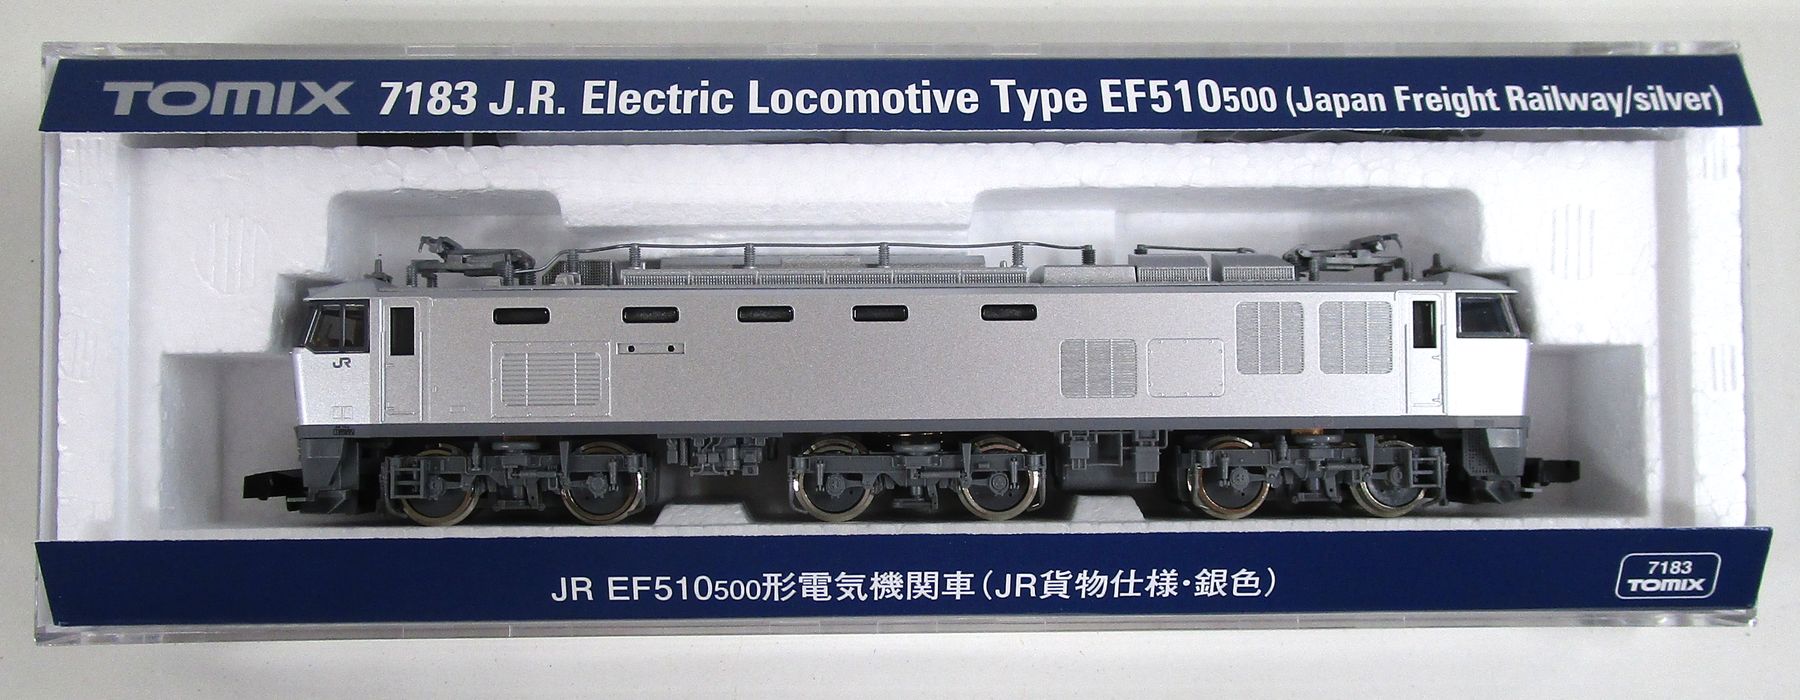 【中古】Nゲージ TOMIX(トミックス) 7183 JR EF510-500形電気機関車(JR貨物仕様・銀色) 【A】